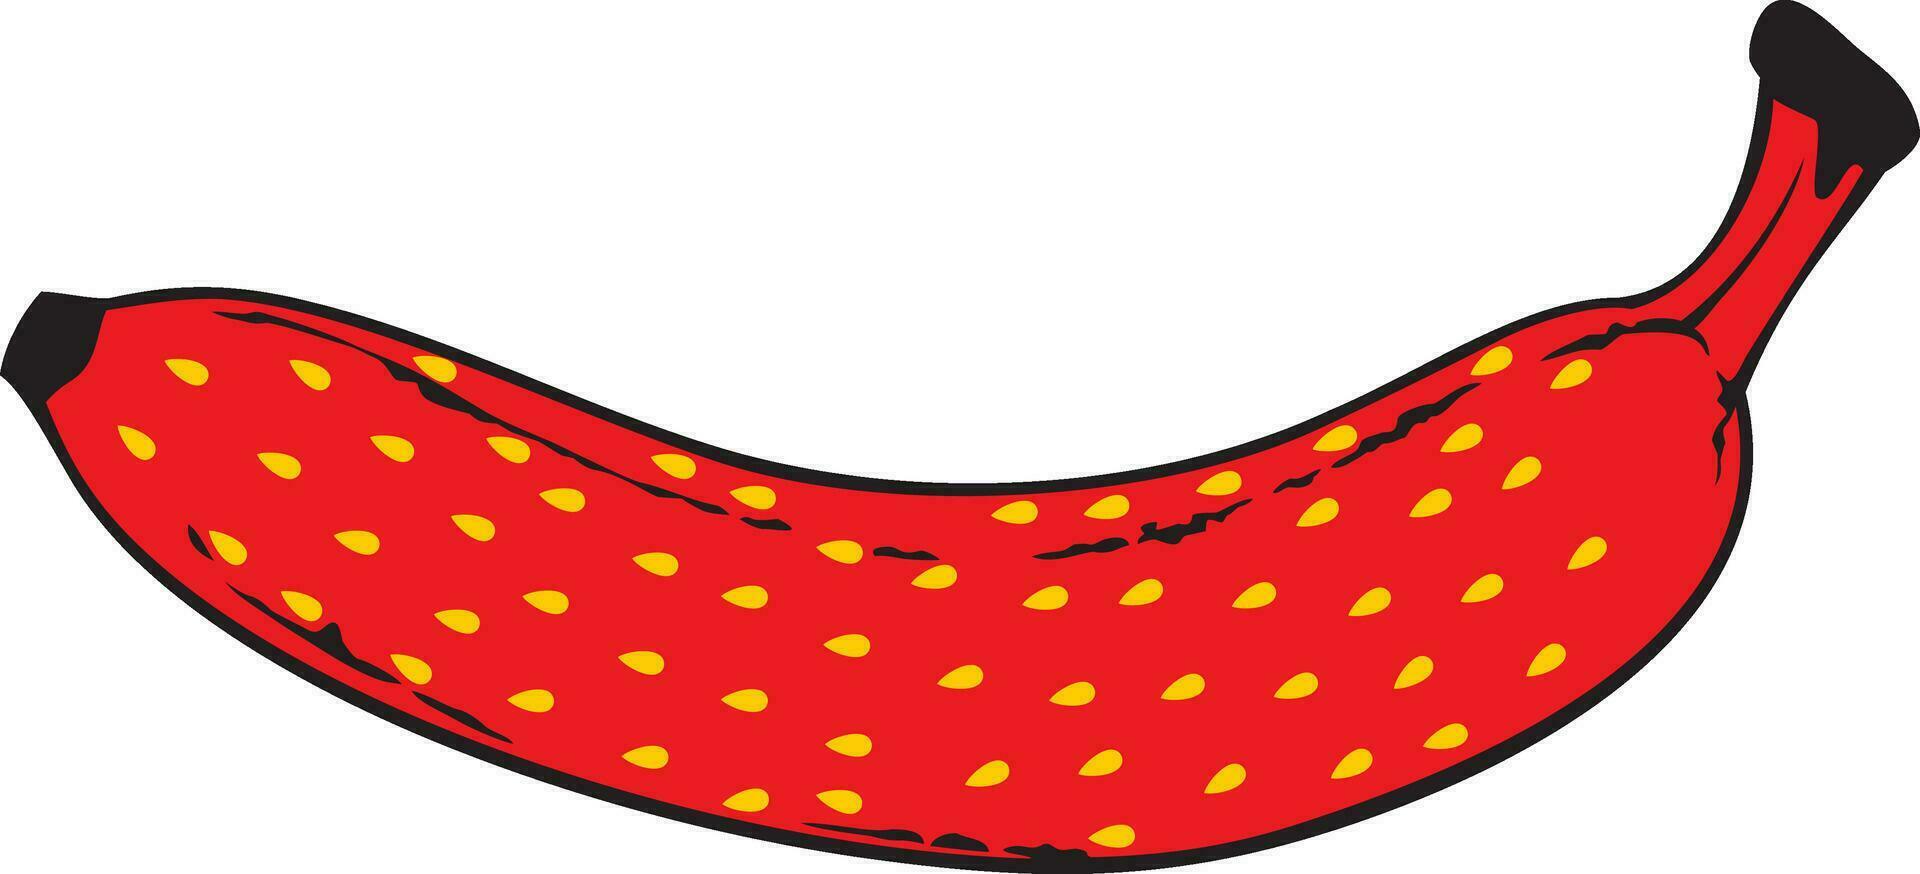 banaan aardbei kleur. vector illustratie.